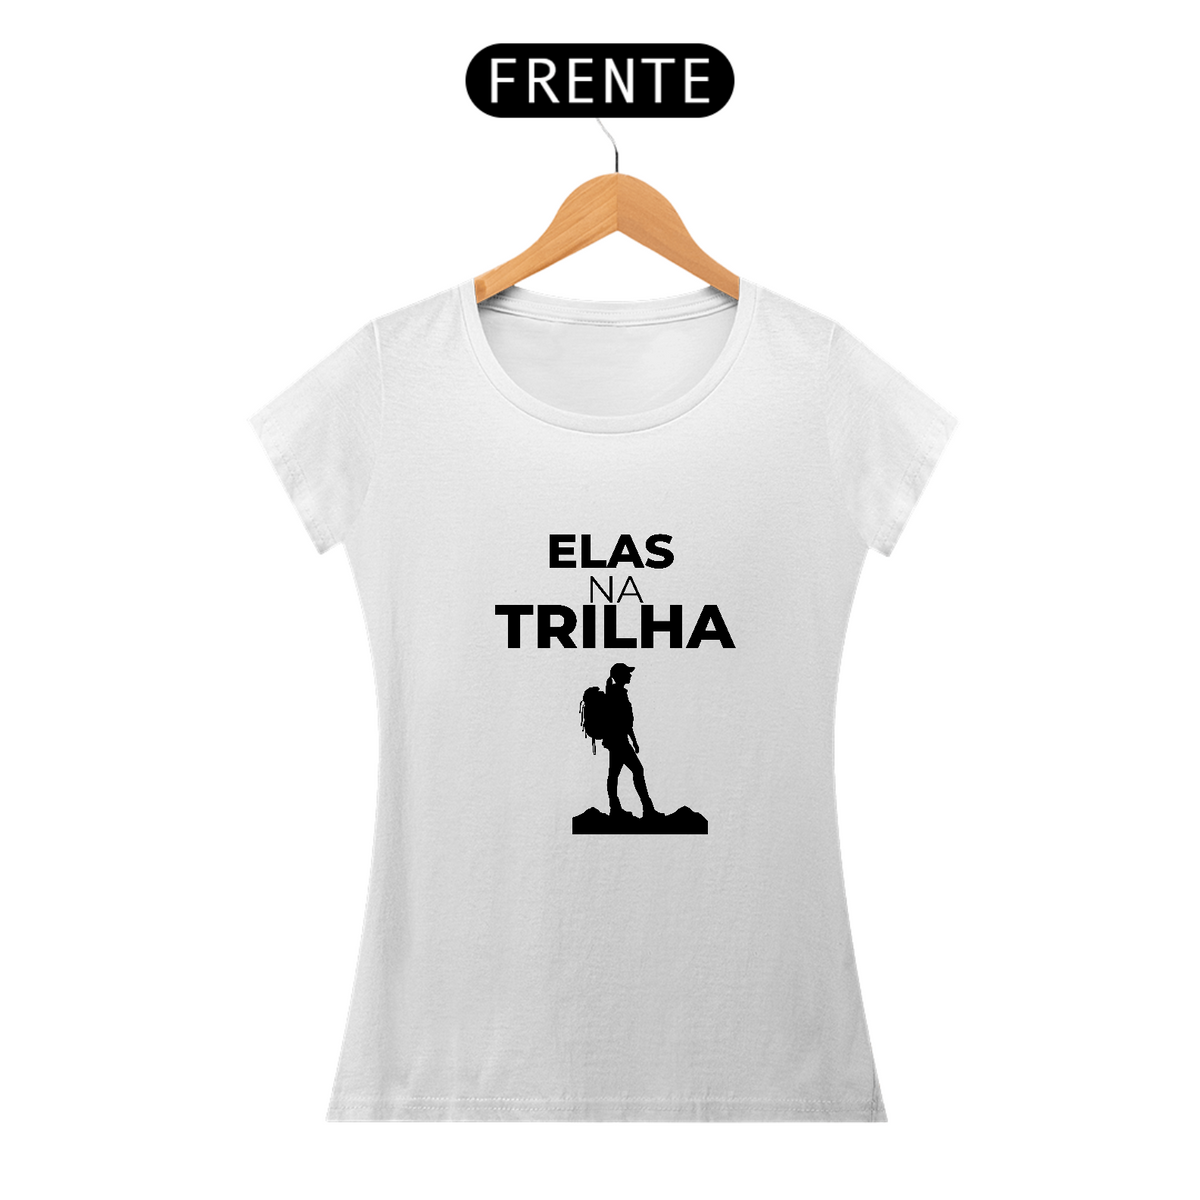 Nome do produto: T- Shirt Elas na Trilha - Feminino 